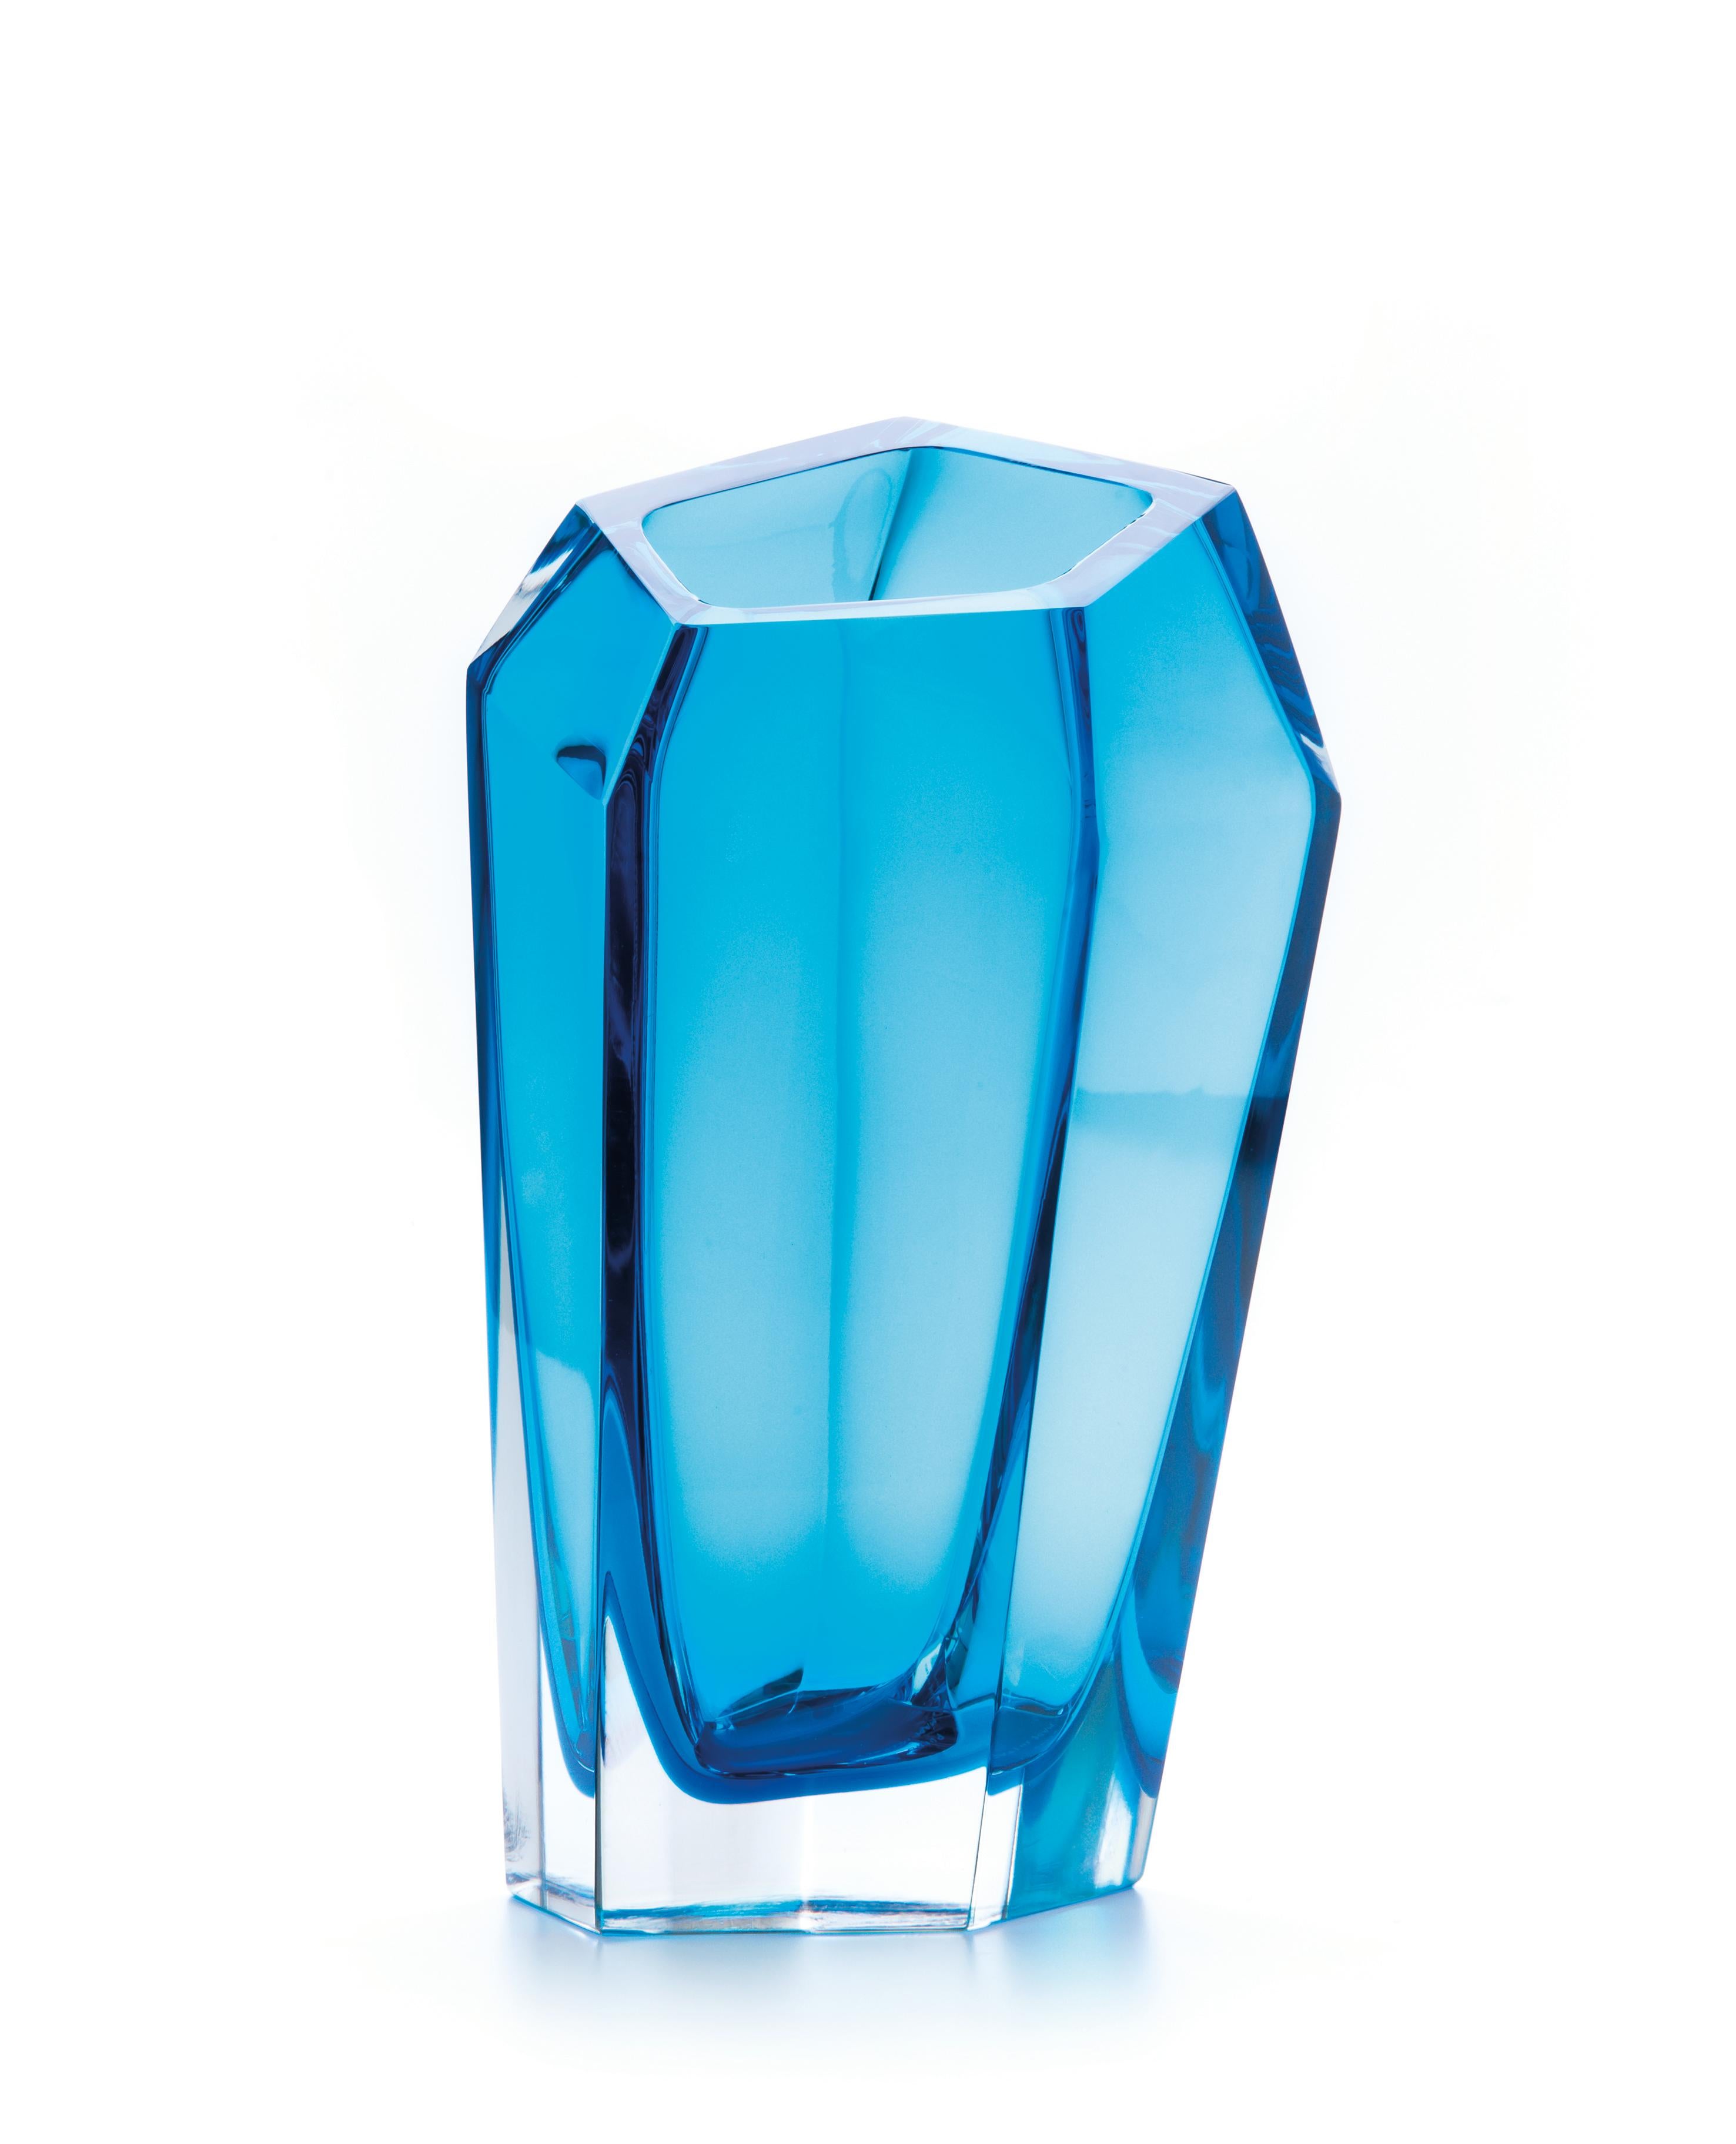 Petit vase bleu Kastle de Purho
Dimensions : D20 x H35 cm
Matériaux : Verre
D'autres couleurs et dimensions sont disponibles. 

Purho est un nouveau protagoniste du design made in Italy, un travail de synthèse, une recherche qui dure depuis des